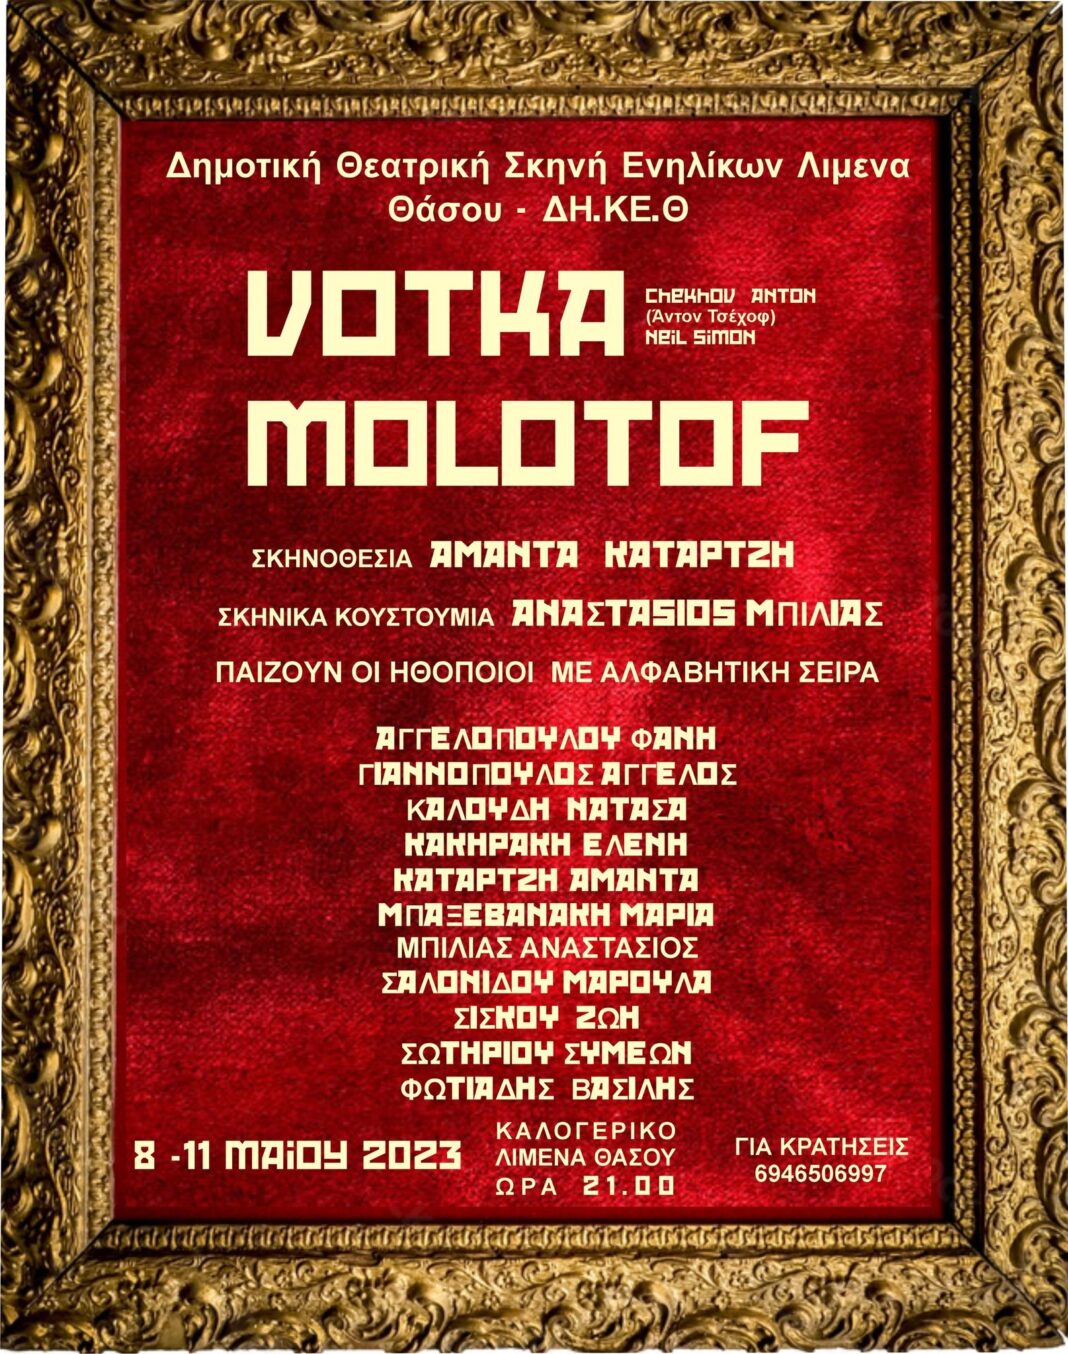 Δημοτική-Θεατρική-Ομάδα-Λιμένα-«Βότκα-Μολότοφ»